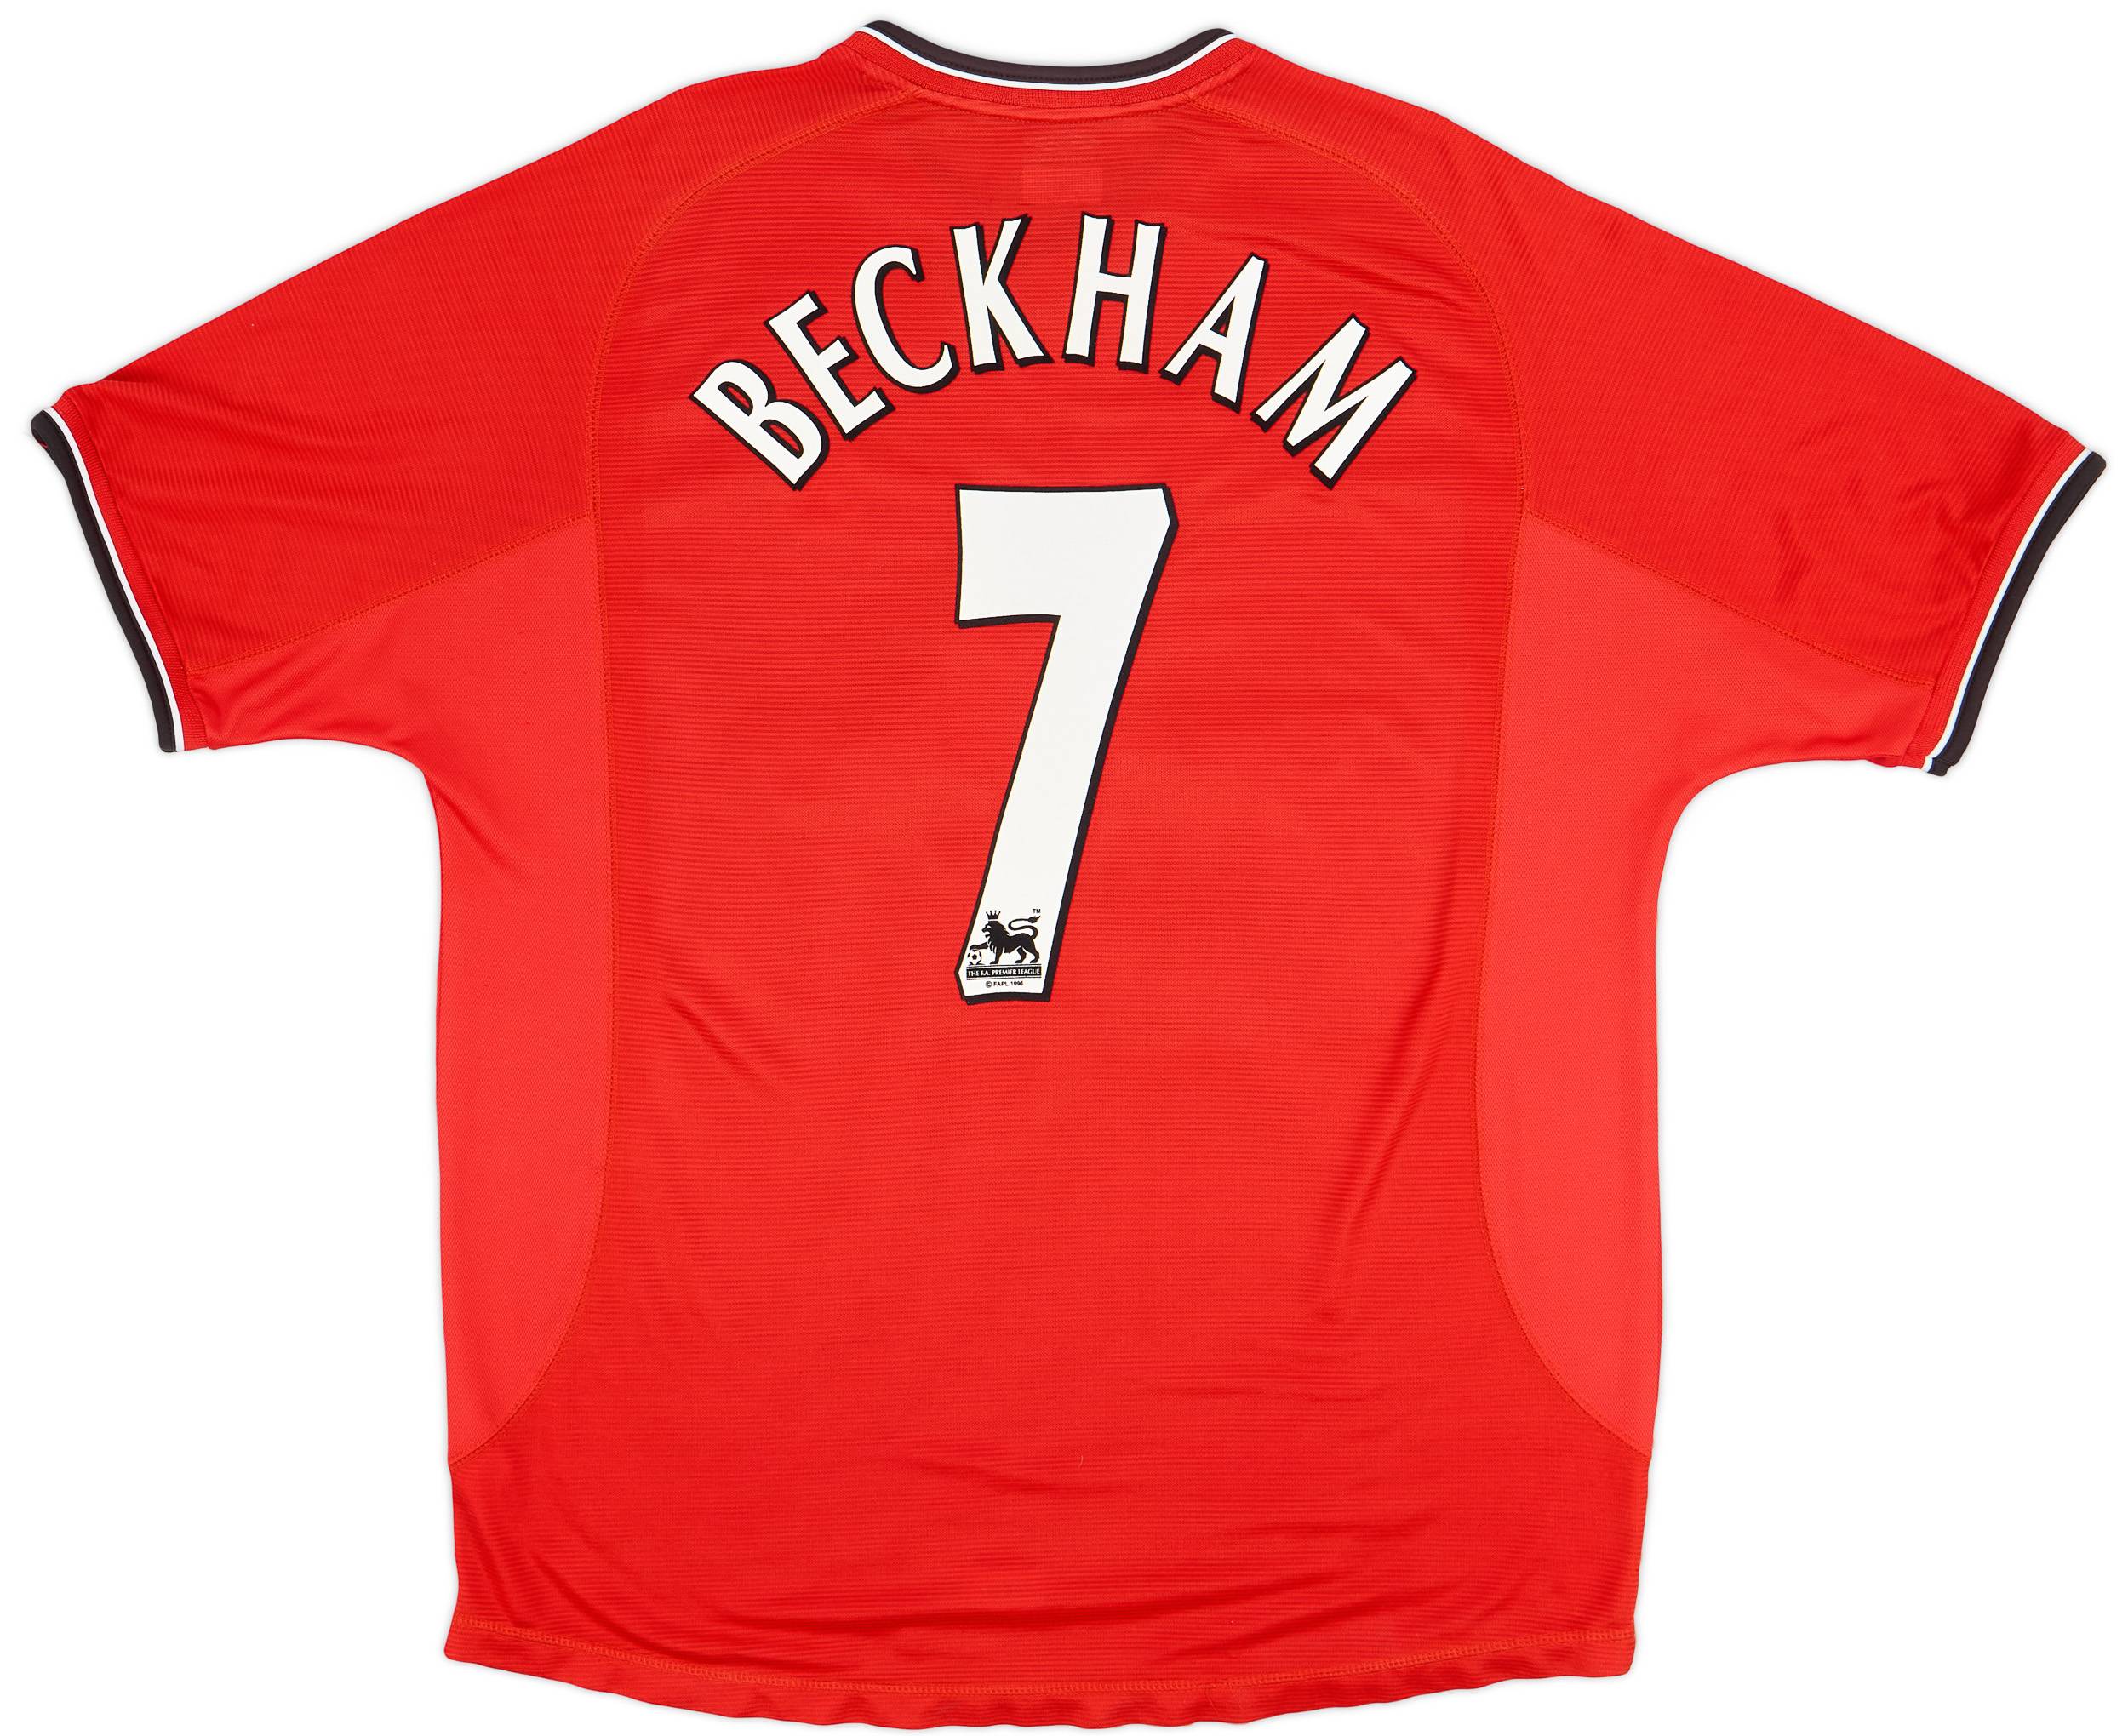 2000-02 Manchester United Home Shirt Beckham #7 - 6/10 - (XL)